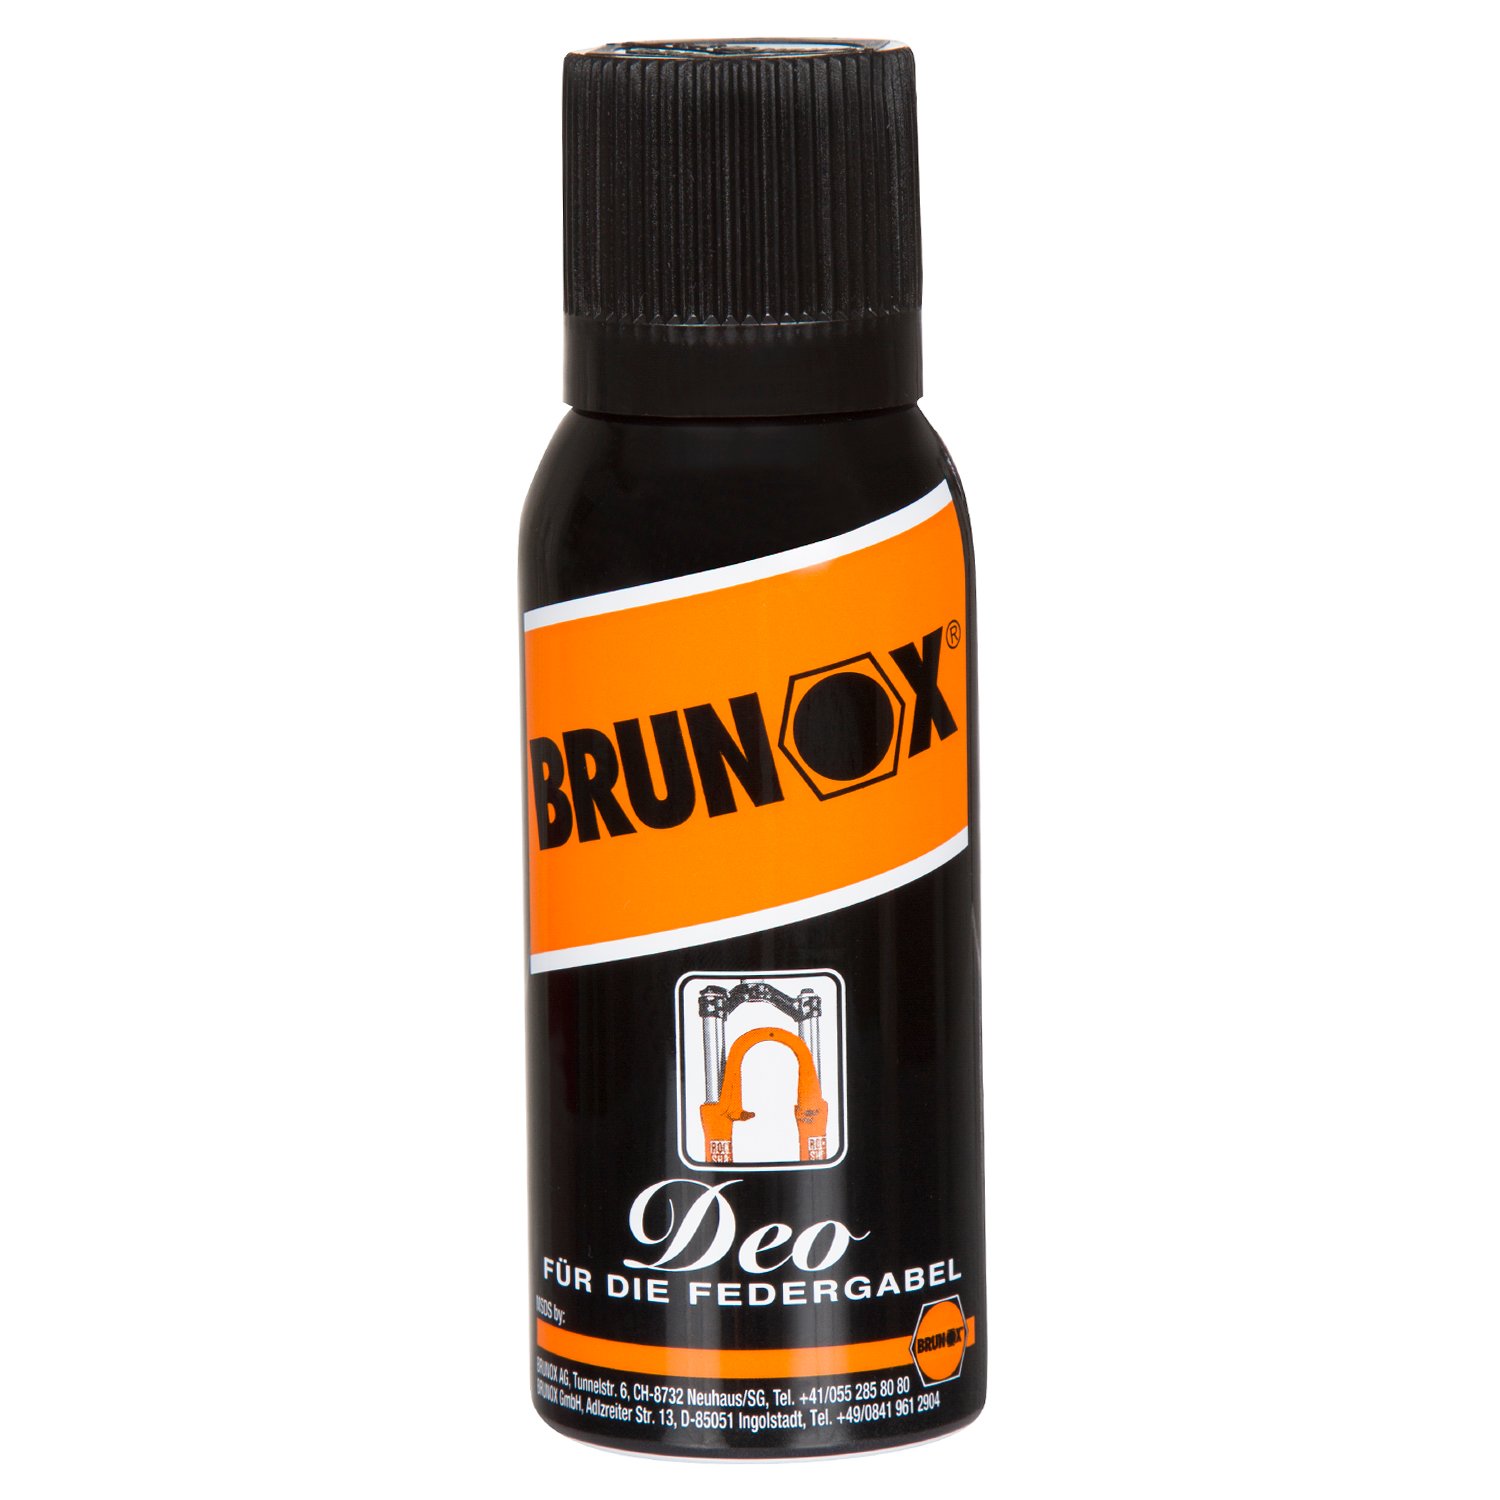 Brunox Bike-Federgabelspray Rock Shox Deo 100 ml